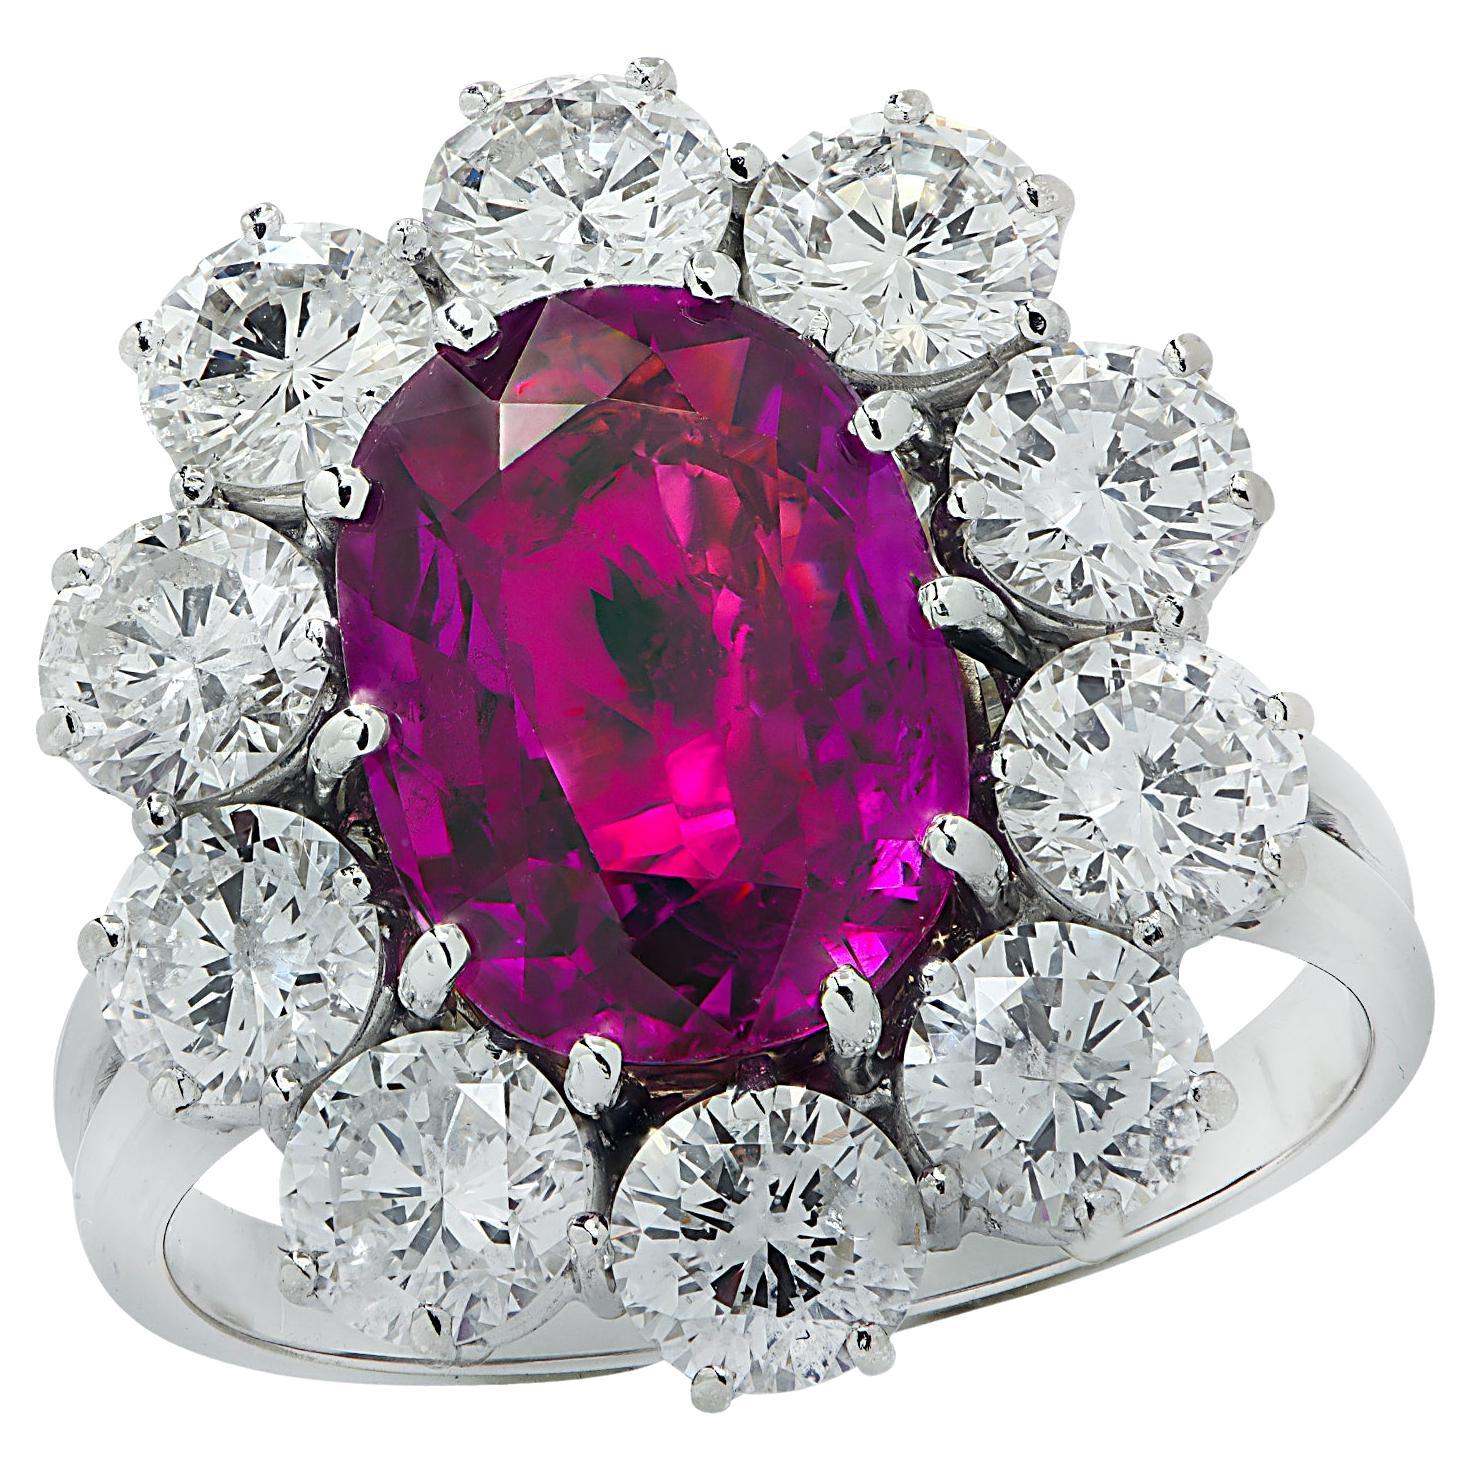 Vivid Diamonds GIA Certified 3.82 Carat Pinkish Purple Sapphire Cocktail Ring